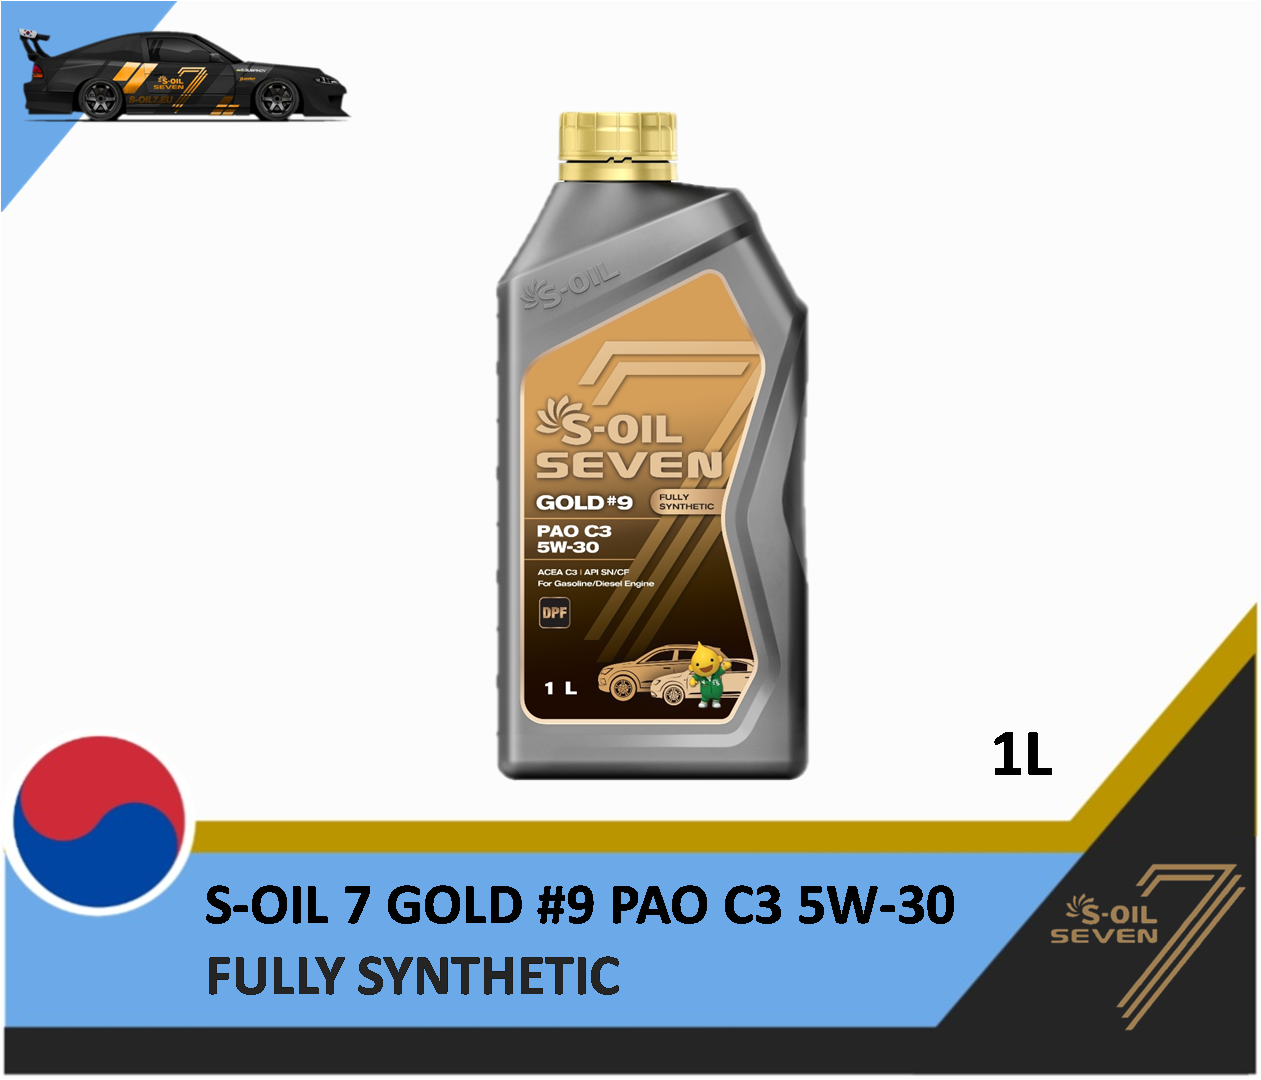 S-OIL 7 GOLD #9 PAO C3 5W-30